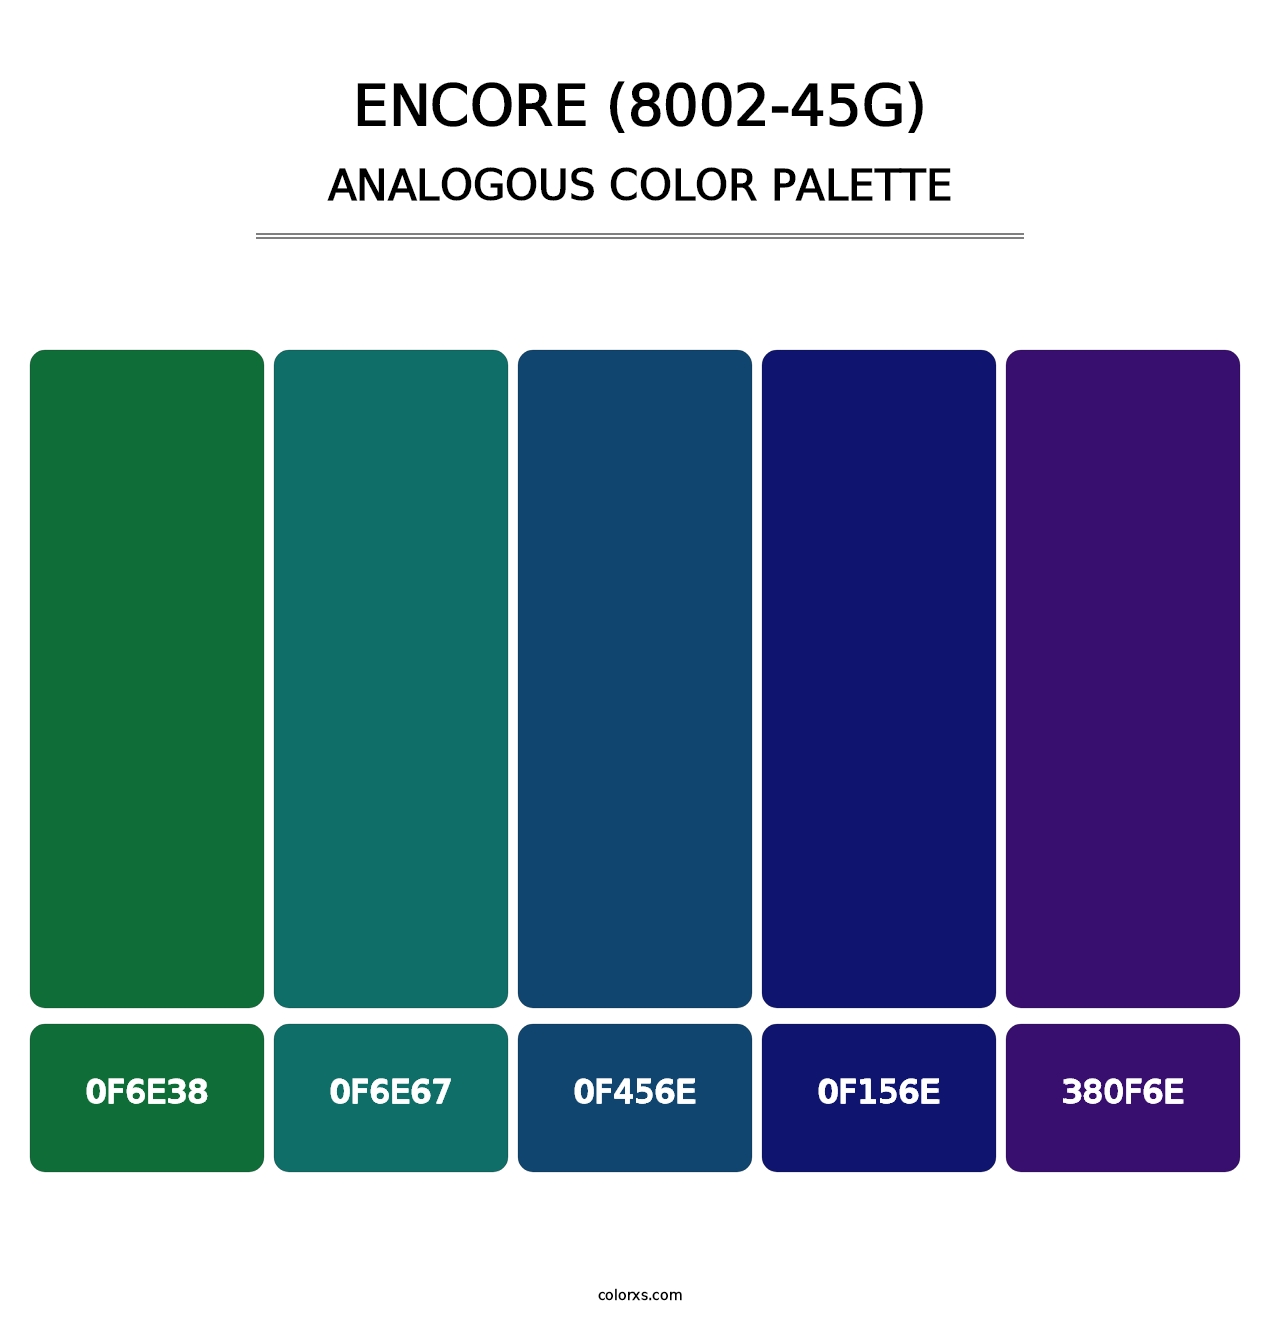 Encore (8002-45G) - Analogous Color Palette